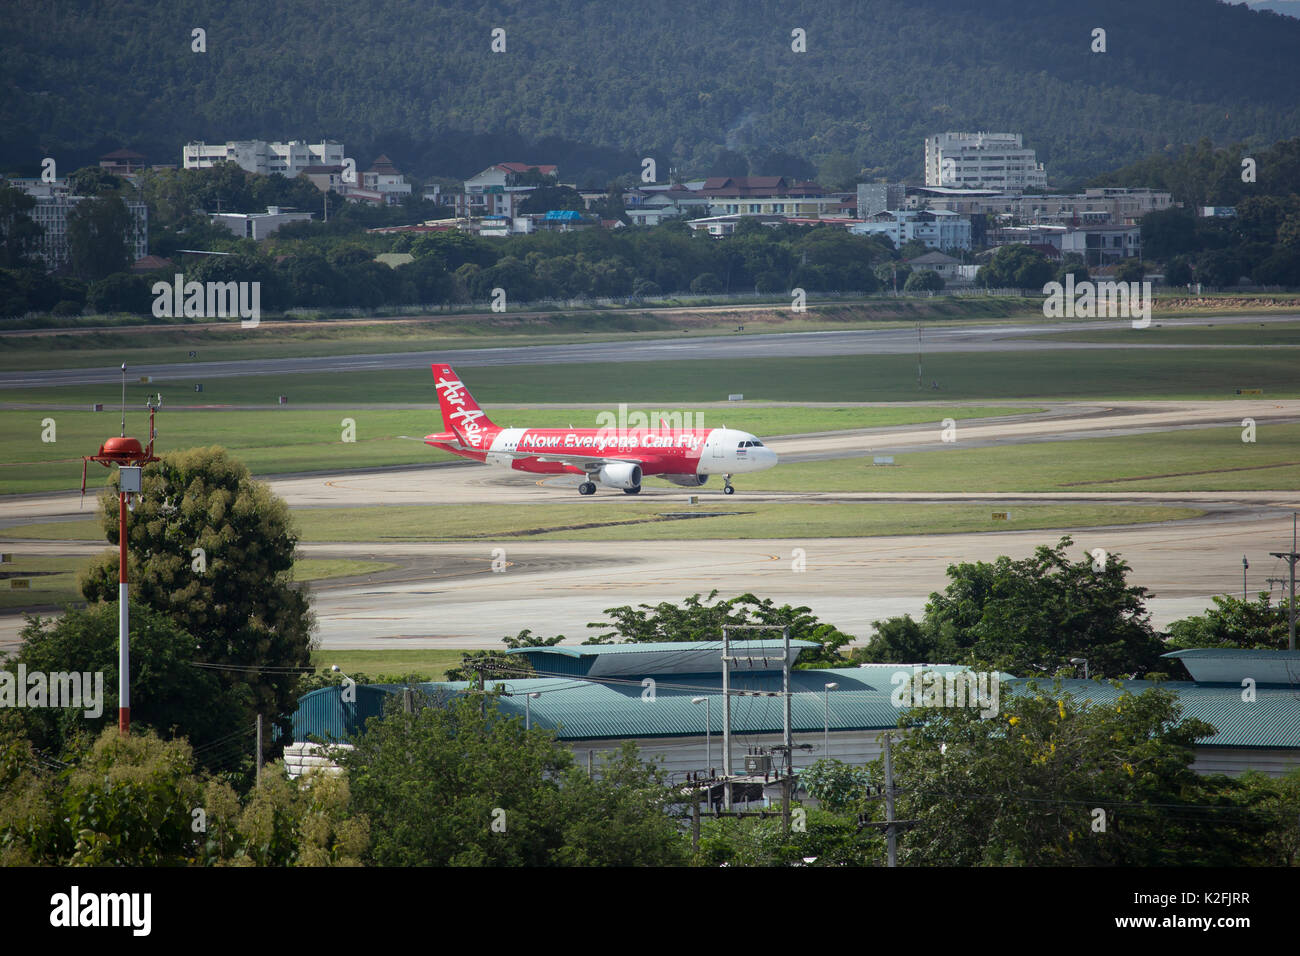 CHIANG MAI, THAILAND - 23. AUGUST 2017: HS-BBN Airbus A320-200 von Thaiairasia. Am Flughafen Chiangmai von khonkaen. Foto bei Flughafen Chiangmai, thaila Stockfoto